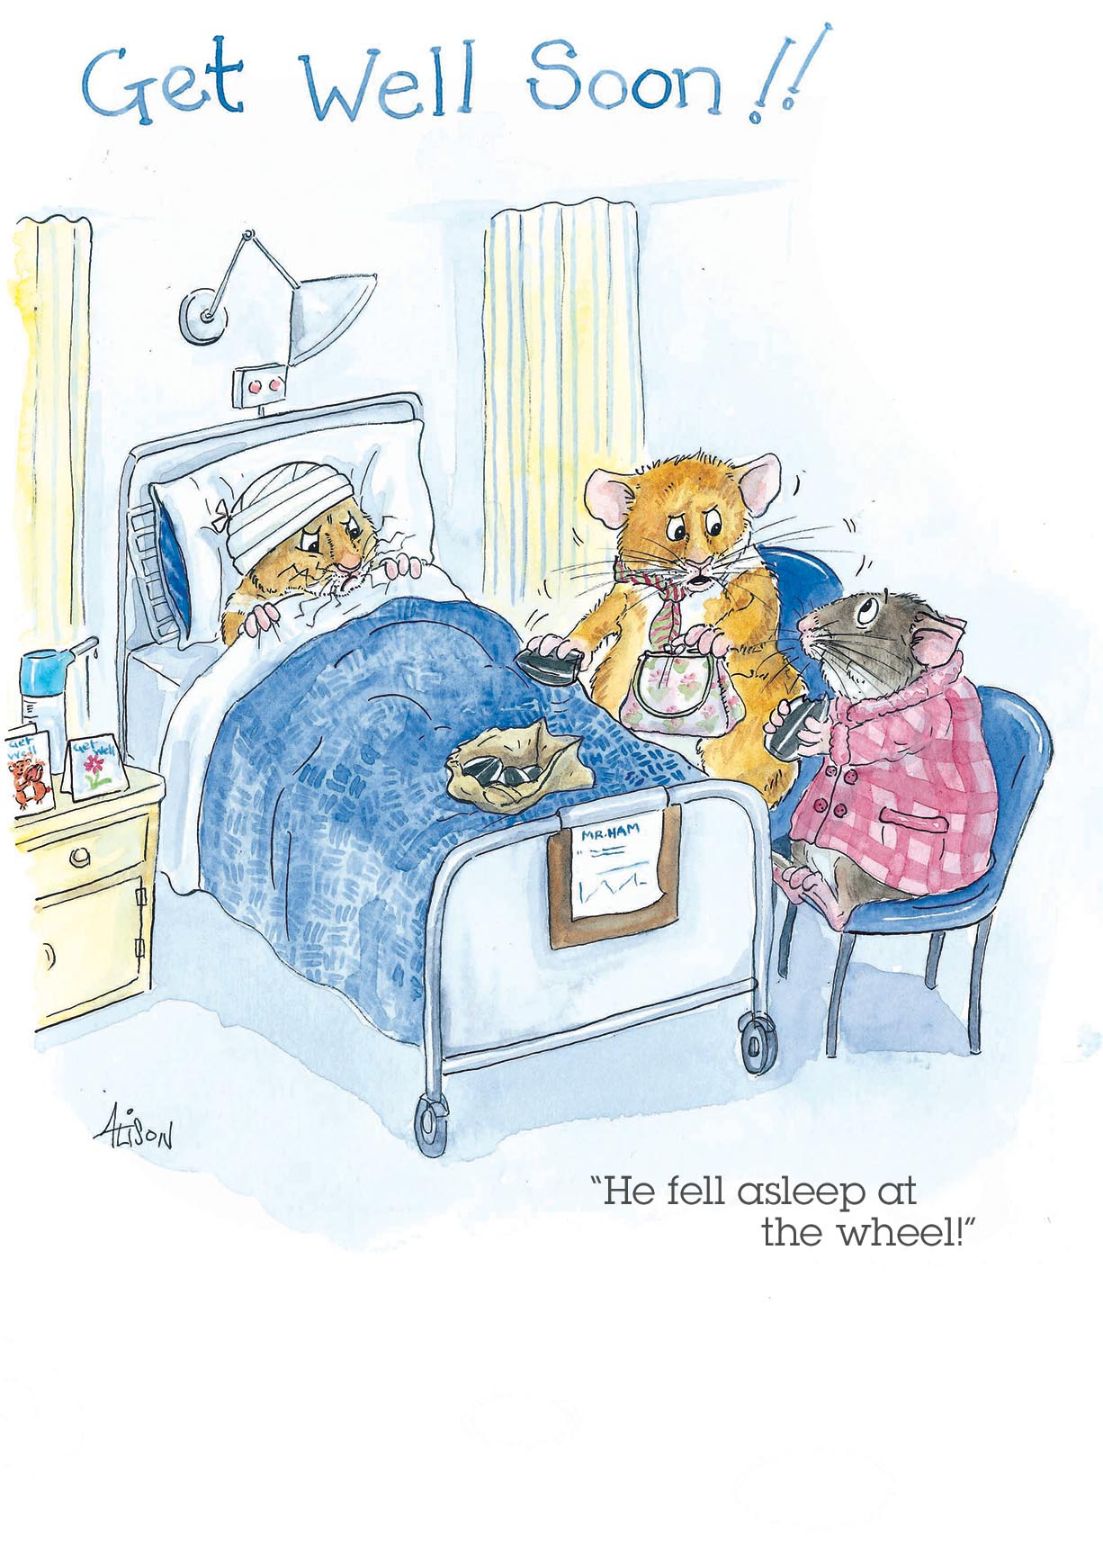 Get Well Soon Asleep At The Wheel Alison's Animals Cartoon Greeting Card